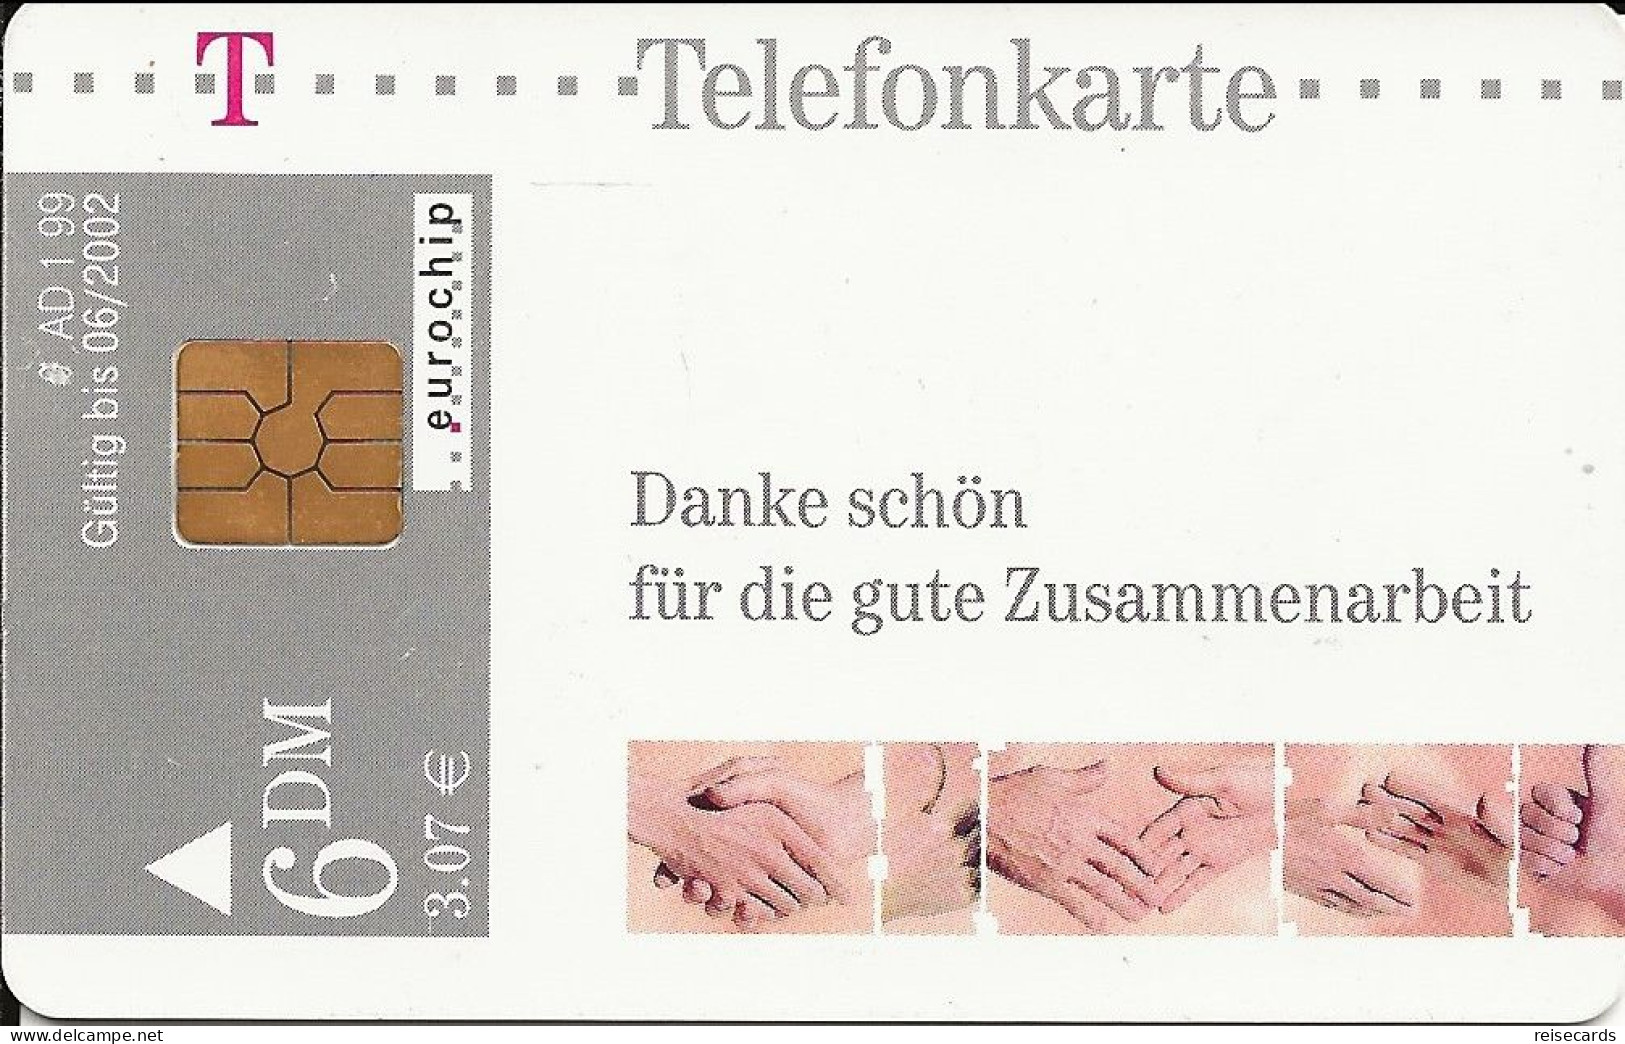 Germany: Telekom AD 1 99 Danke Schön Für Die Gute Zusammenarbeit - A + AD-Series : D. Telekom AG Advertisement